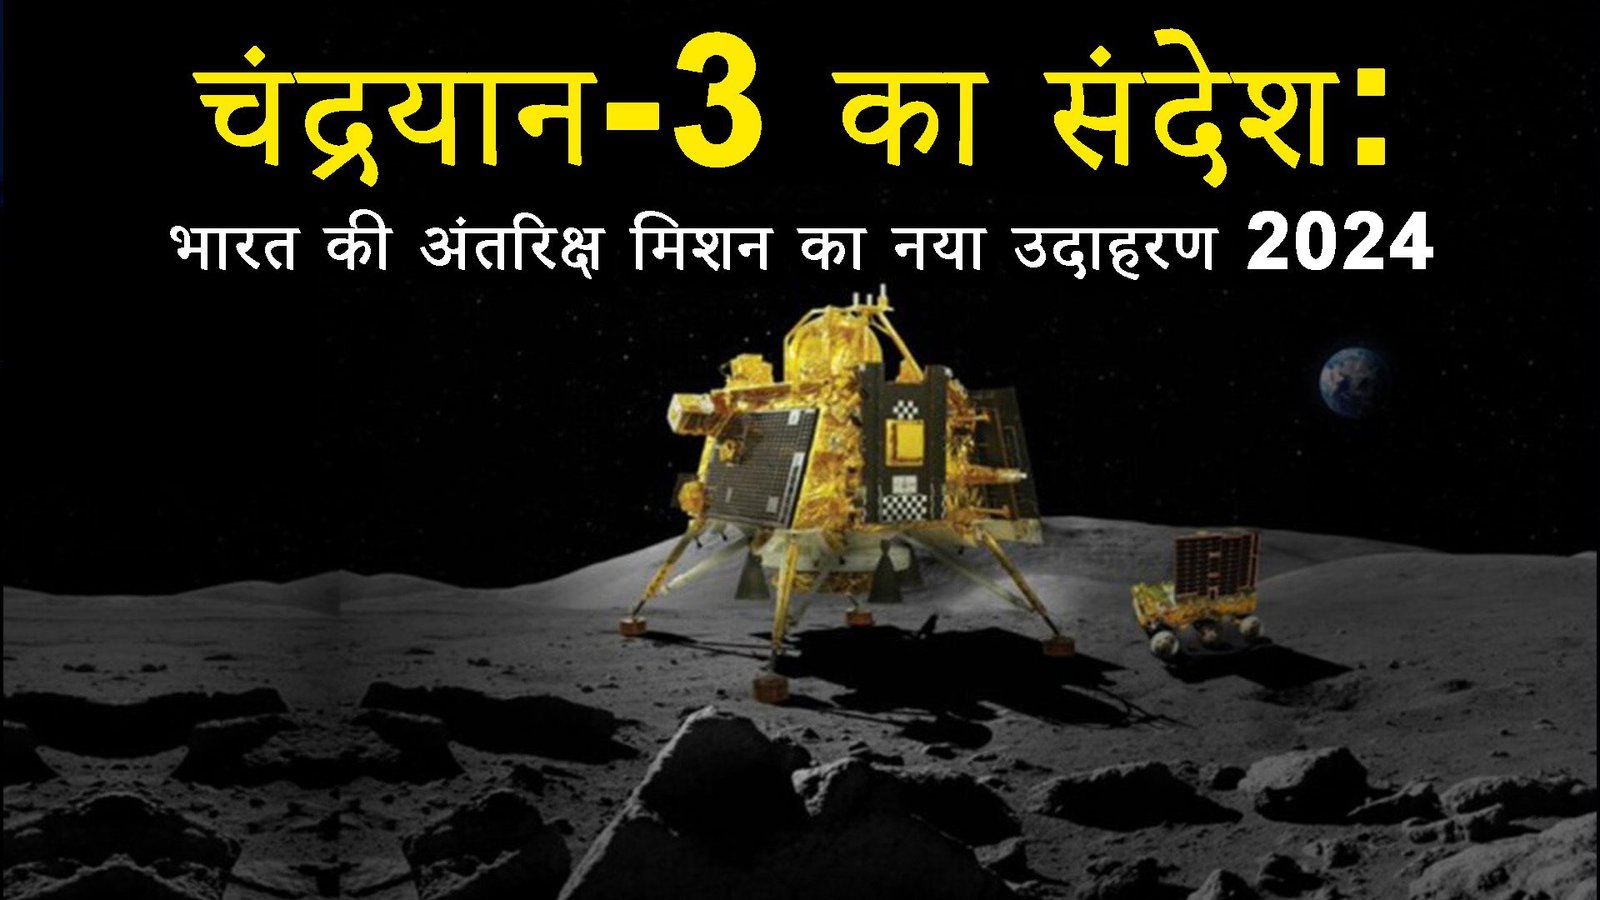 चंद्रयान-3 का संदेश: भारत की अंतरिक्ष मिशन का नया उदाहरण 2024